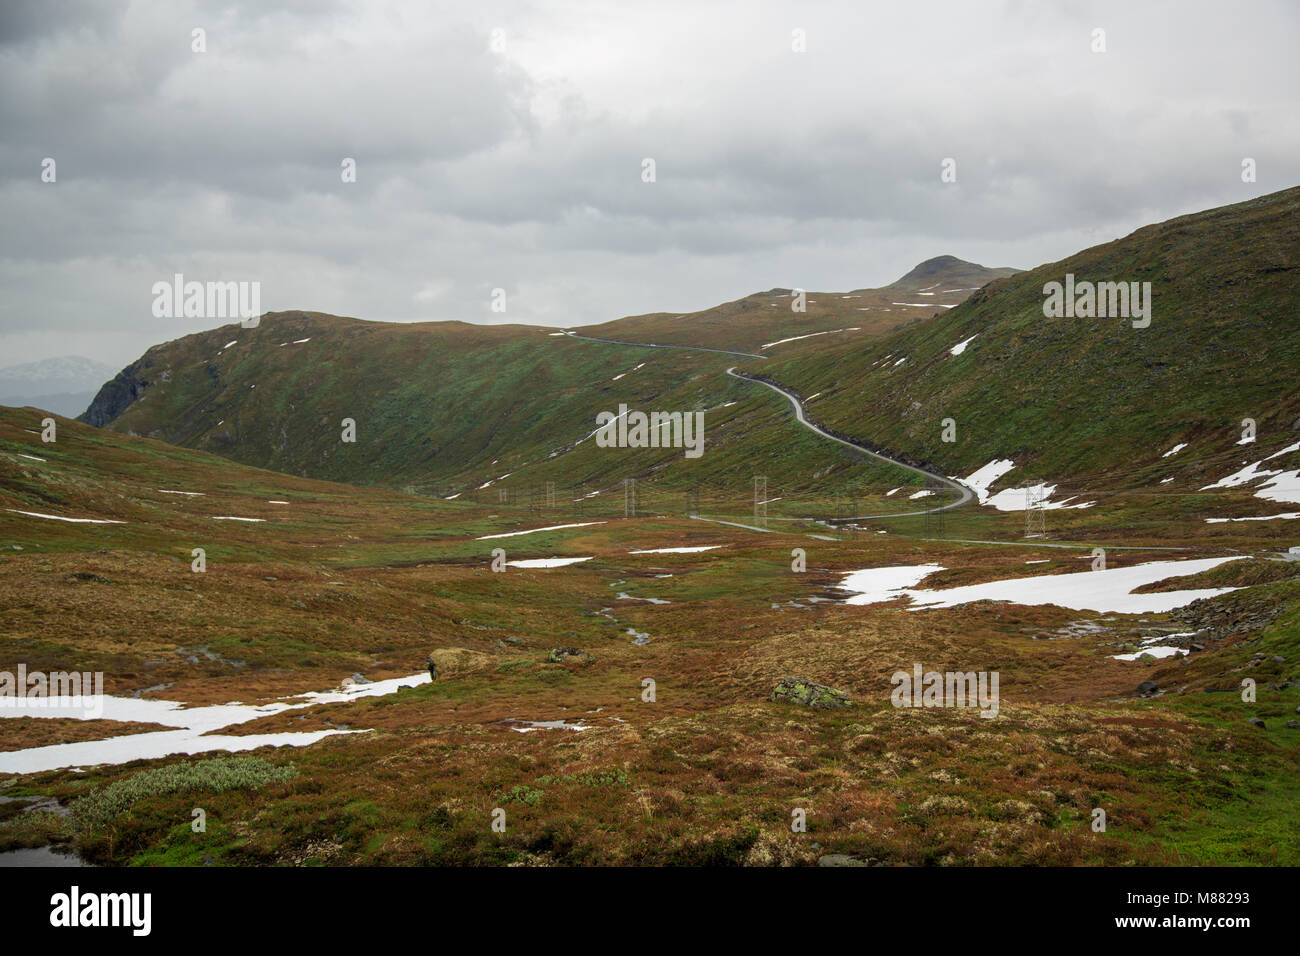 percorso escursionistico tortuoso lungo il paesaggio montano rivestito di neve Foto Stock